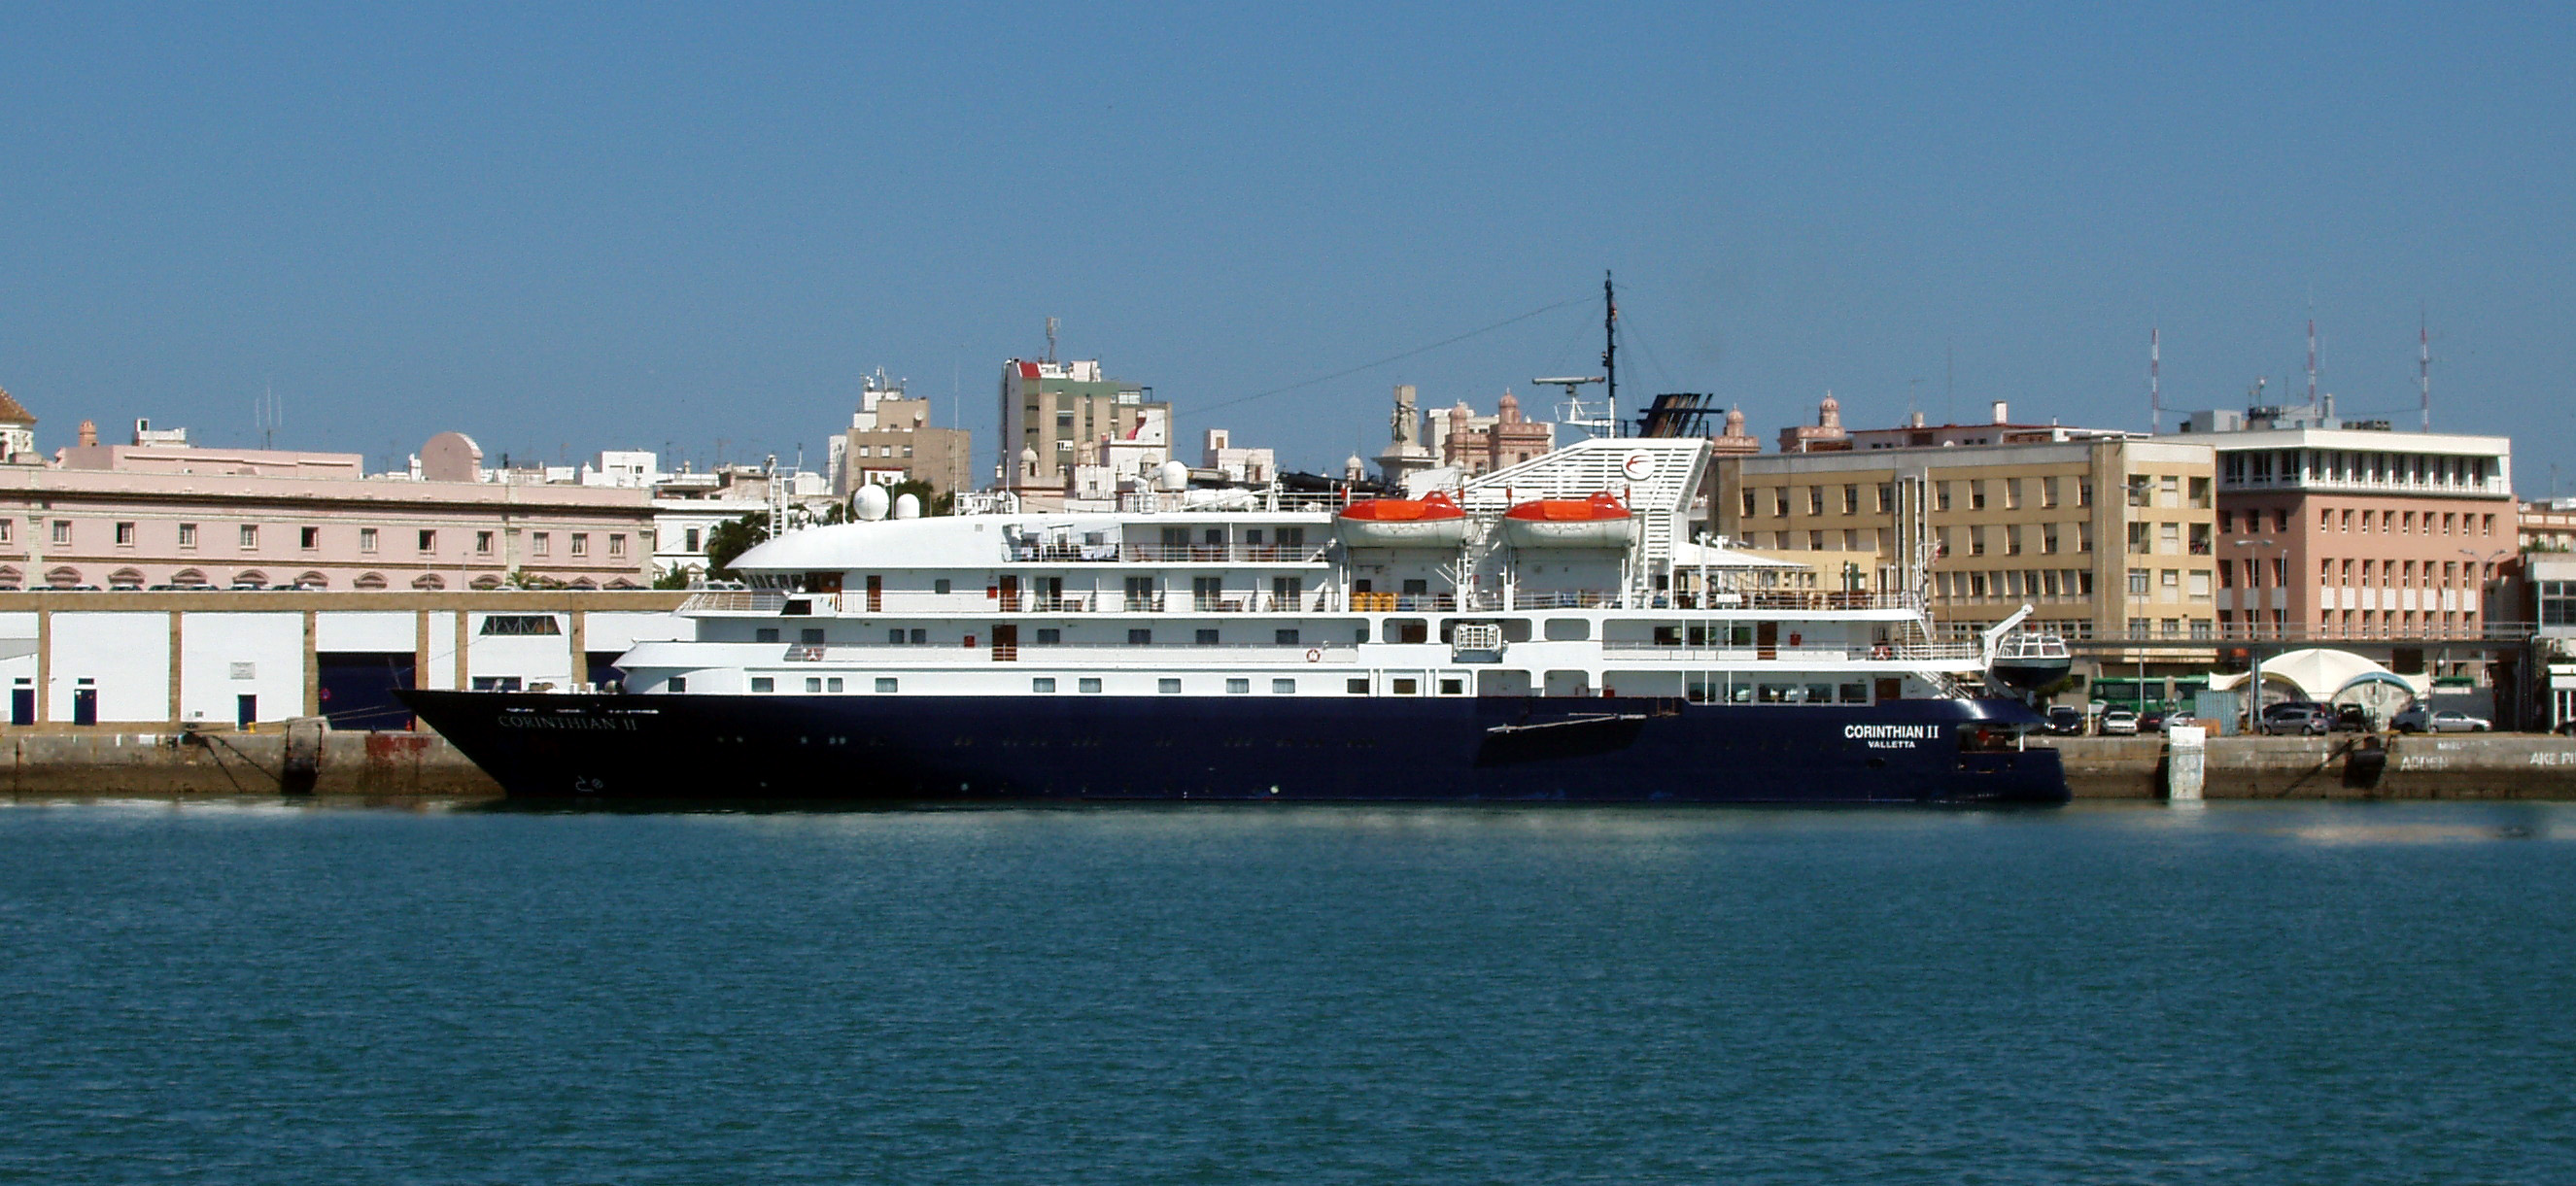 Corinthian II, en el Puerto de la Bahía de Cádiz